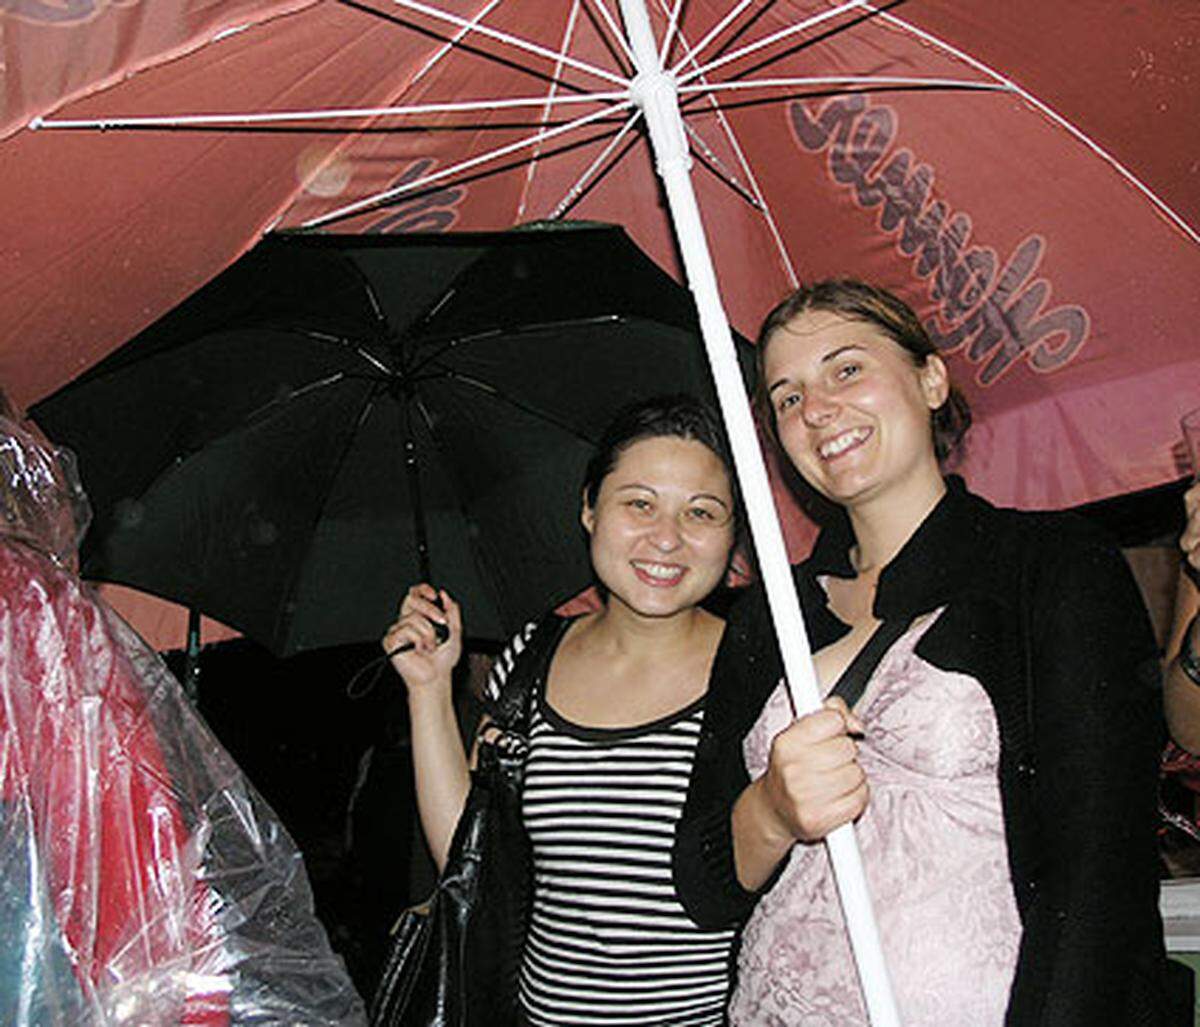 Naja, was solls: Spaß wars trotzdem und das Gewitter lässt einen zumindest unter den Schirmen zusammenrücken.